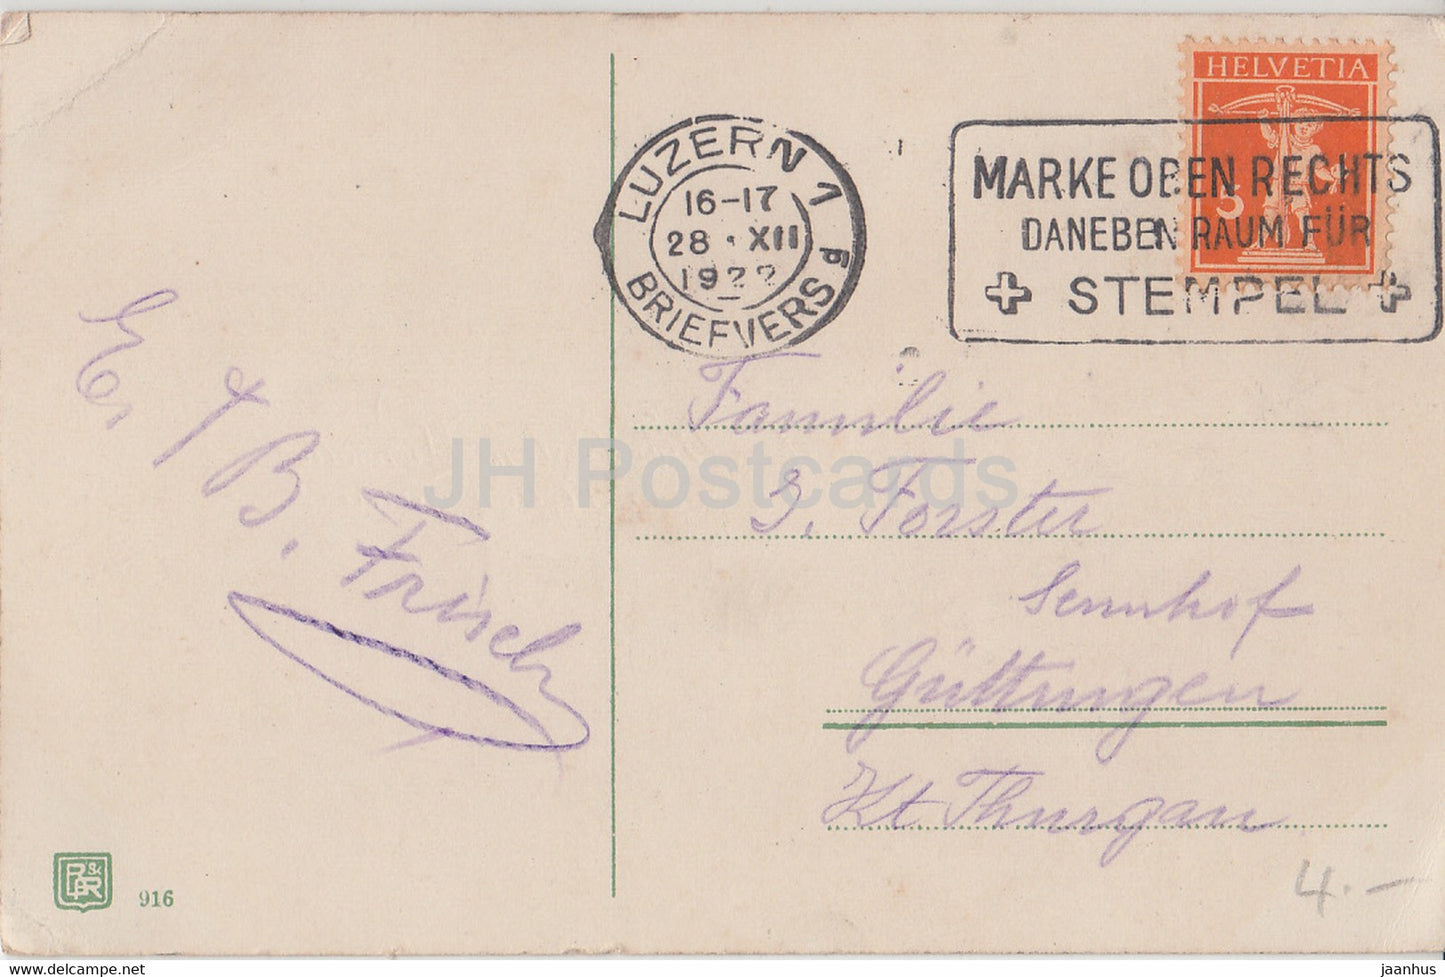 Neujahrsgrußkarte - Die besten Wünsche zum neuen Jahre - Blumen - BR 916 - alte Postkarte - 1922 - Deutschland - gebraucht